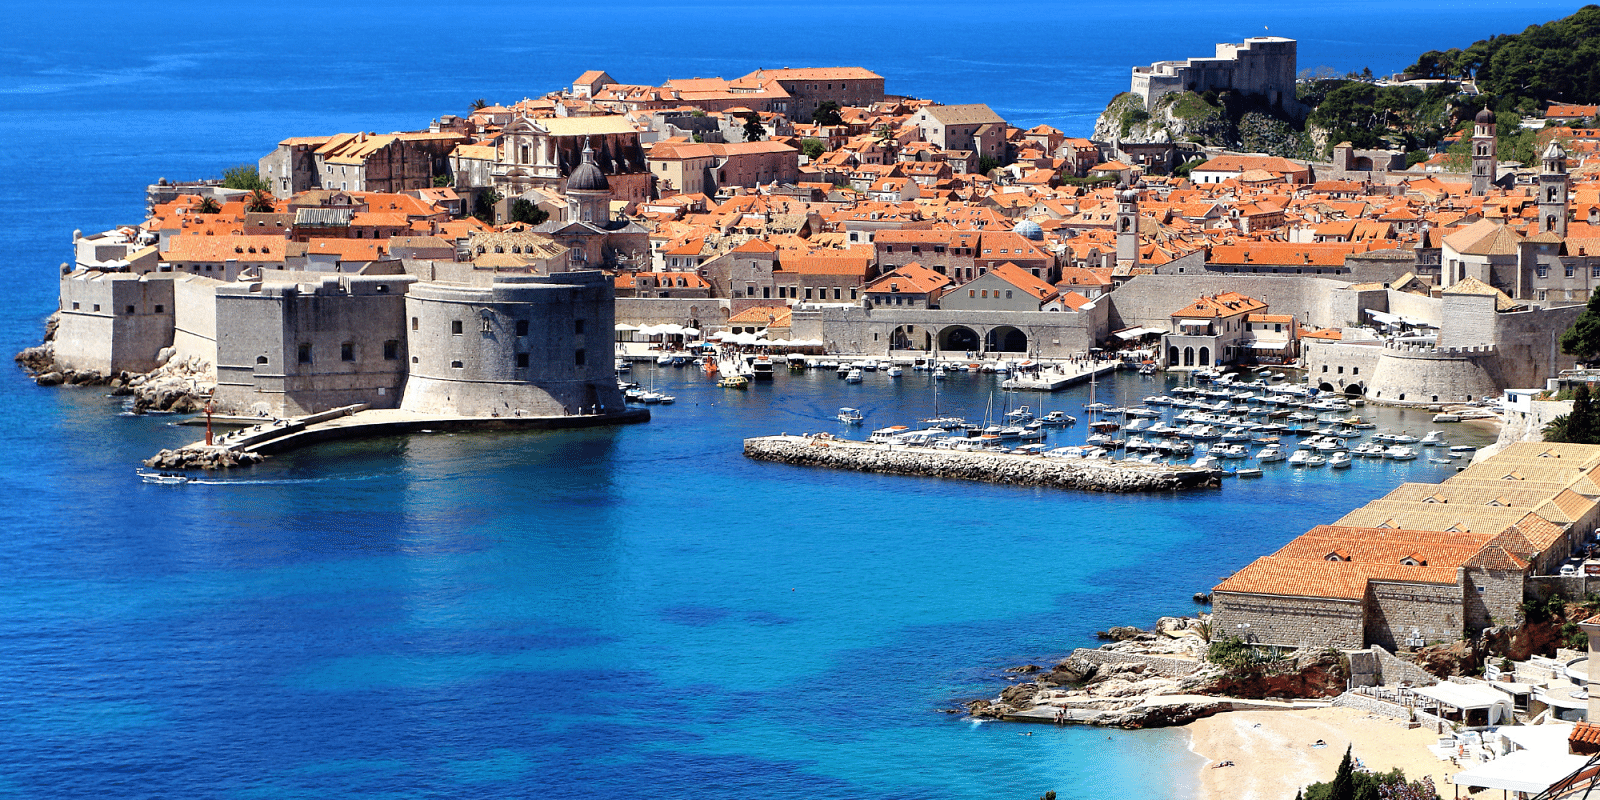 Hyr en båt i Zaton Dubrovnik